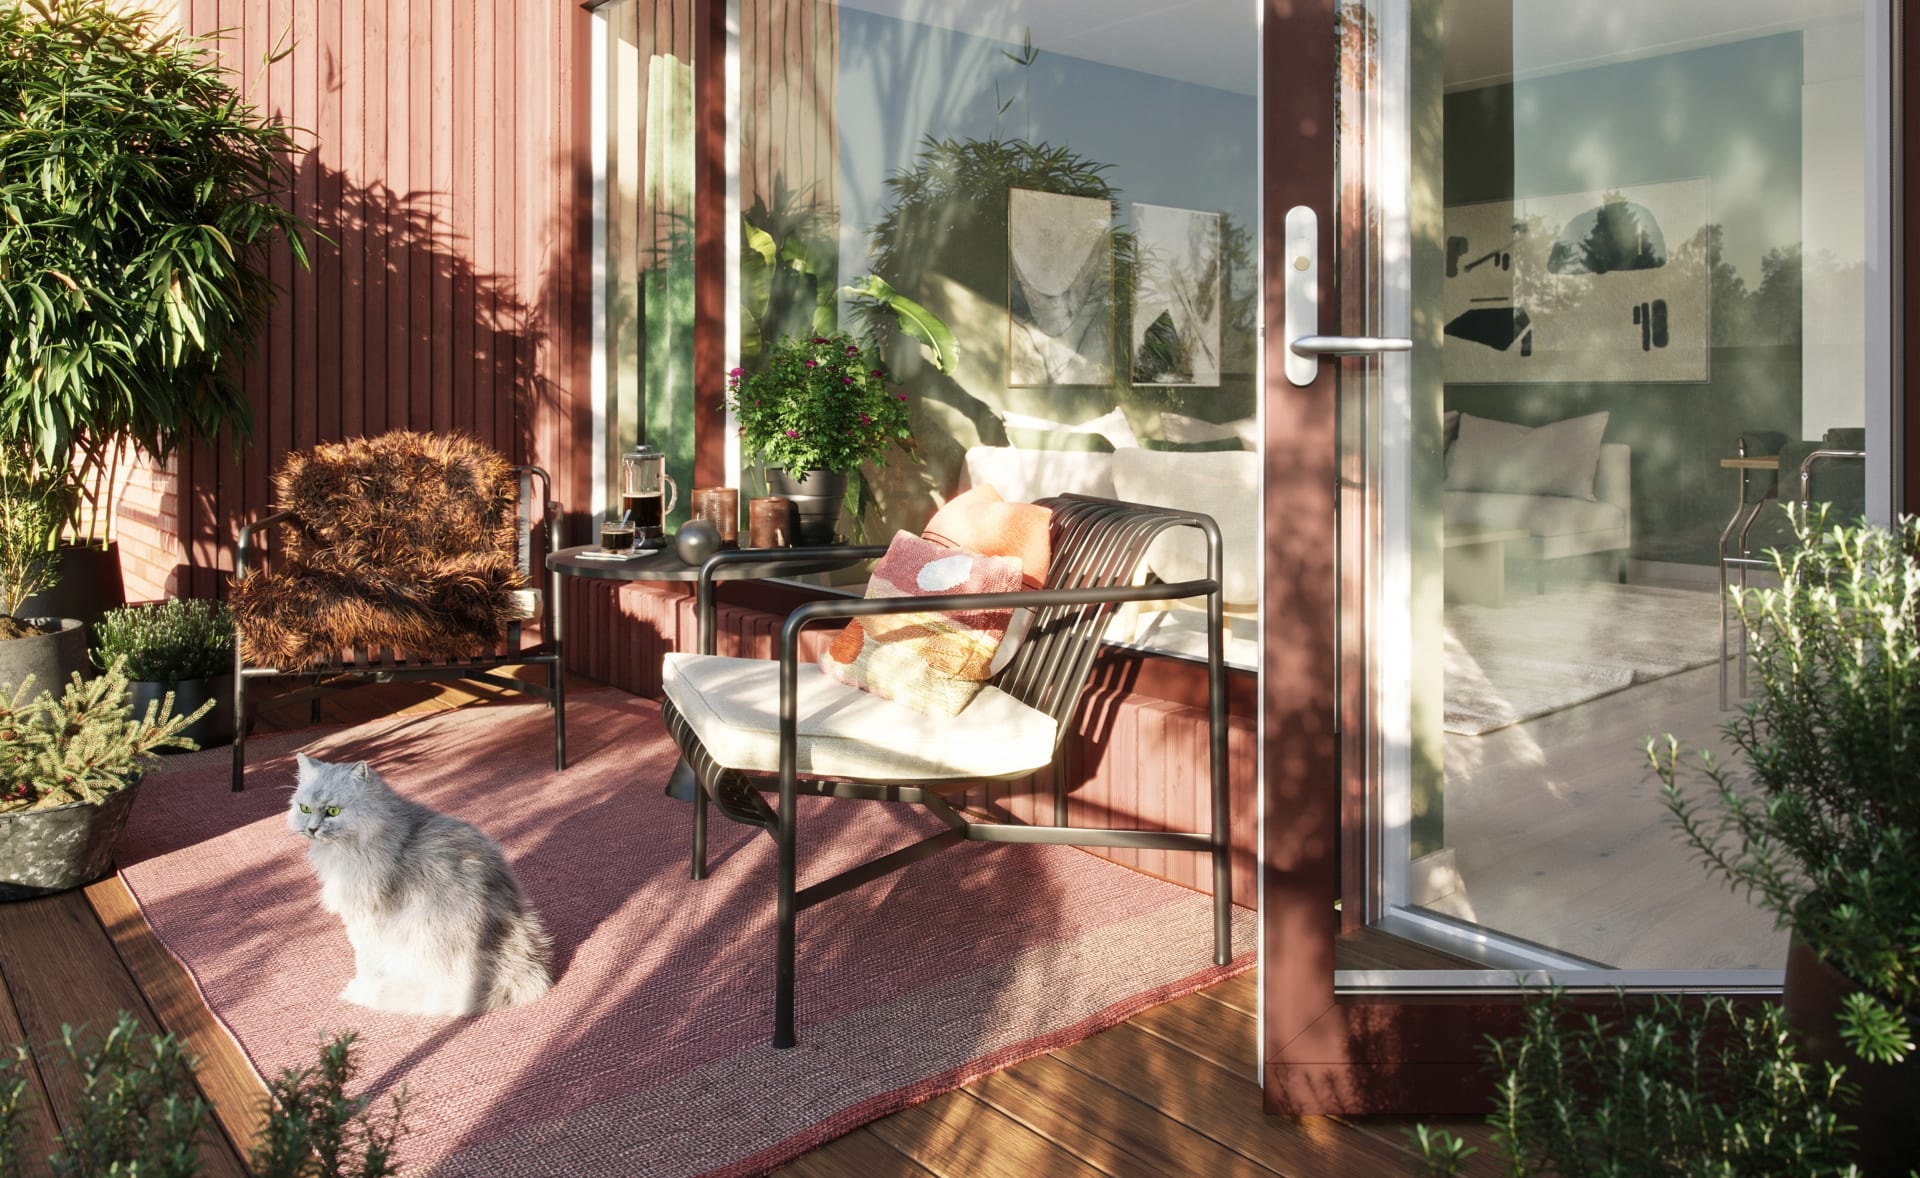 Alle leilighetene har private balkonger - hvor også de firbente beboerne kan nyte utsikten og sola.